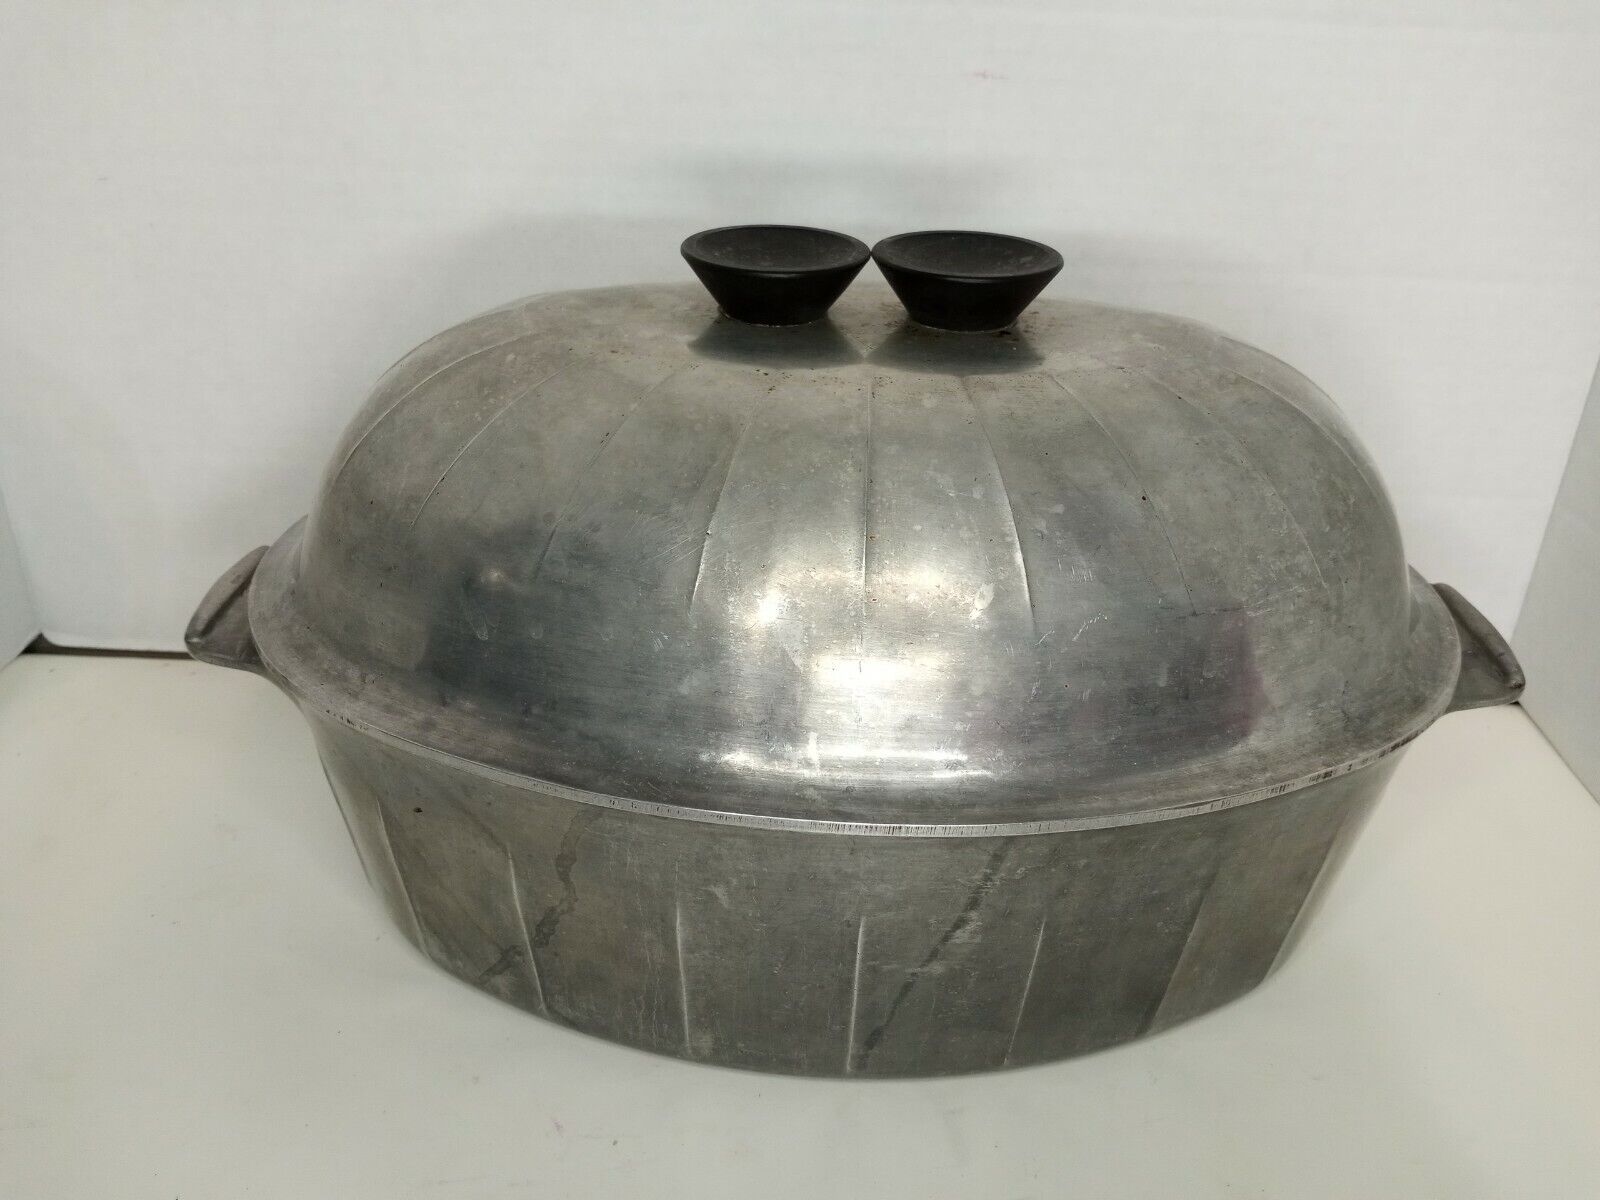 VTG Household Institute Cooking Utensils Aluminum Oval Oven Roaster Pan Lid Bake